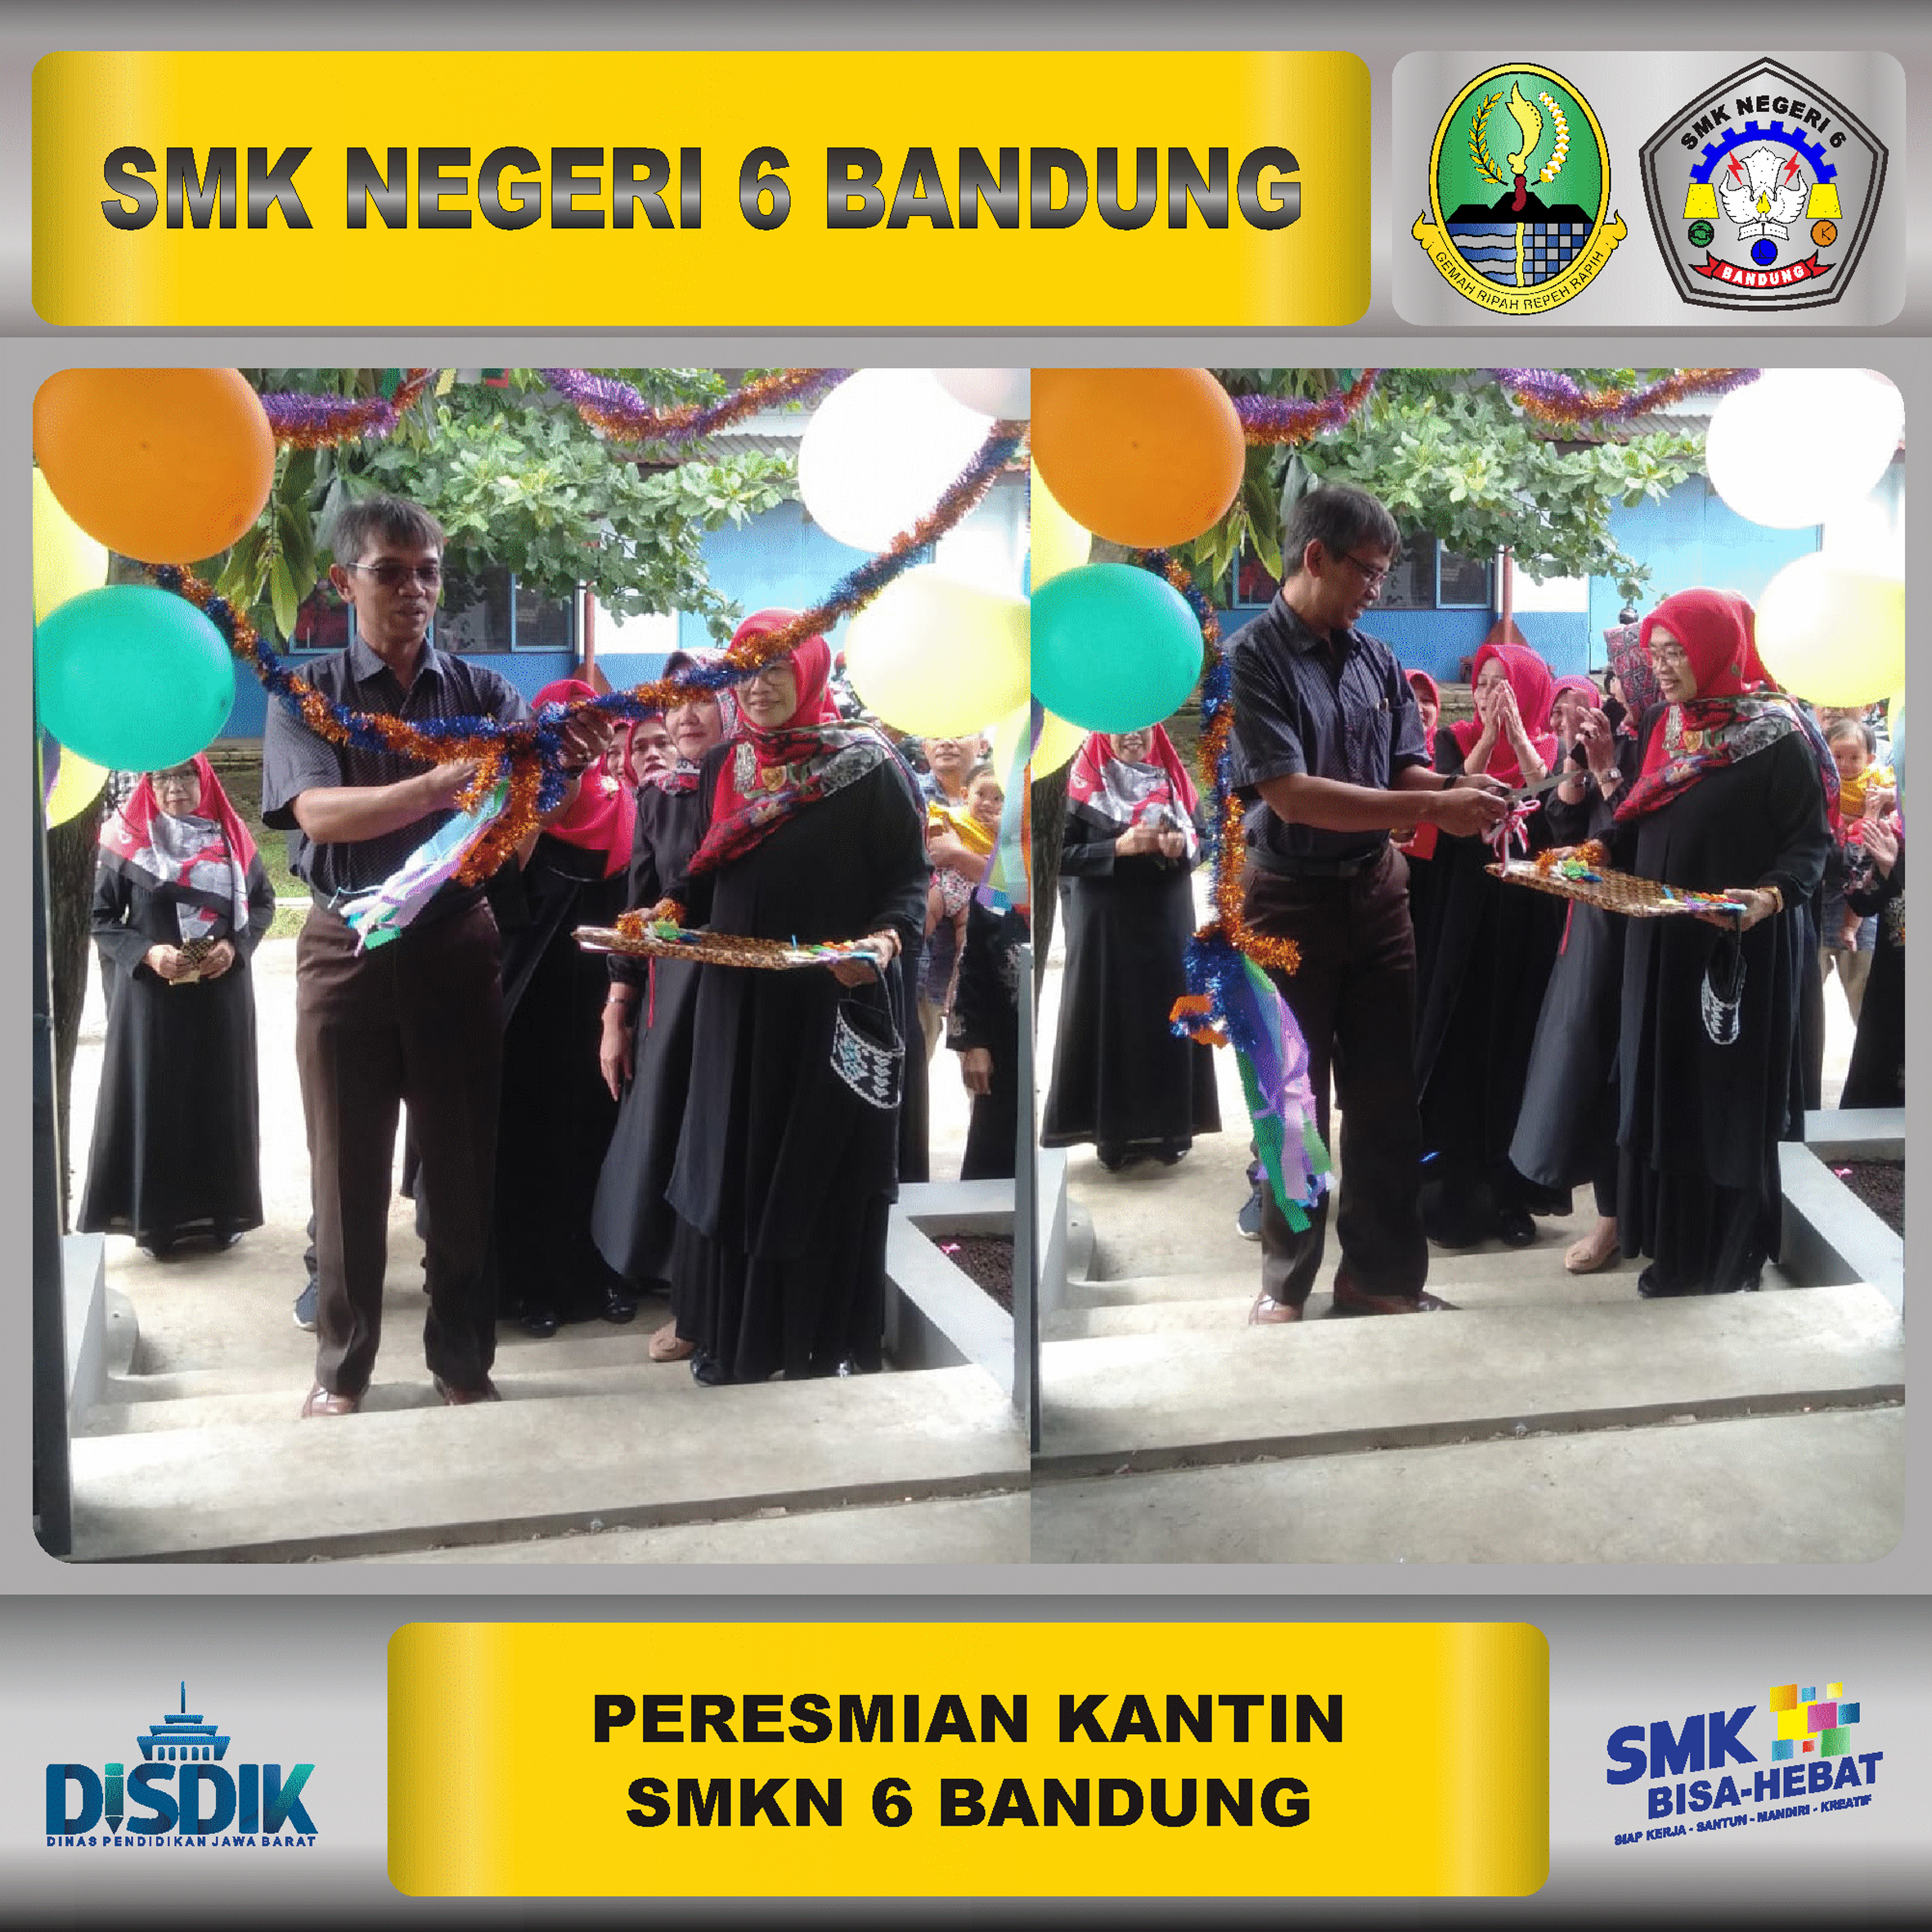 Peresmian Kantin SMK Negeri 6 Bandung